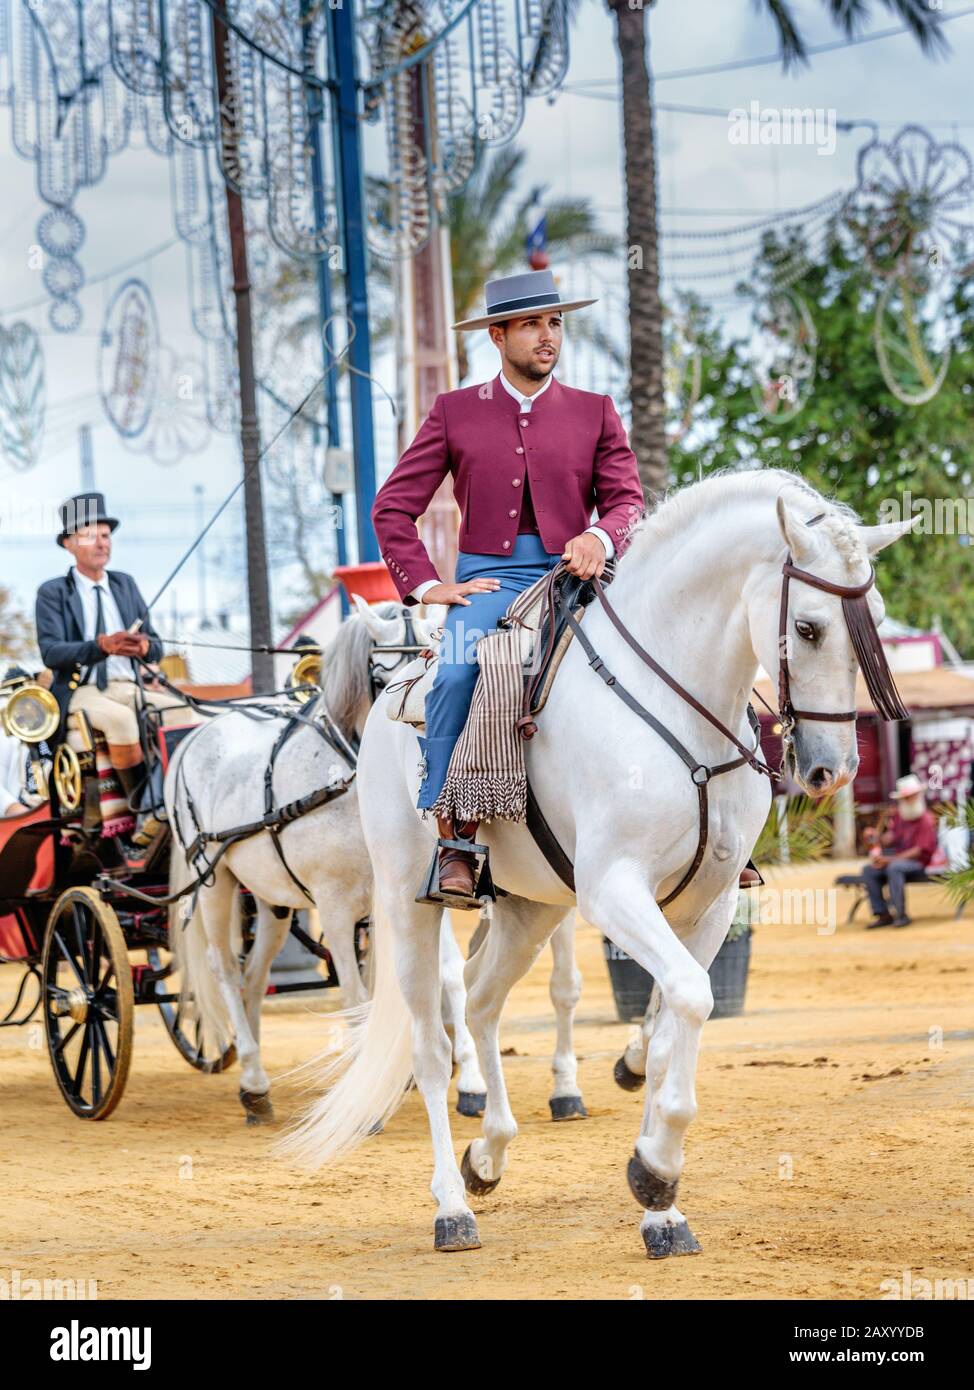 Reiter und Kutschen im traditionellen Festkleid, Pferdemesse Jerez (Feria de Caballo), Jerez de la Frontera, Provinz Cádiz, Andalusien, Spanien Stockfoto